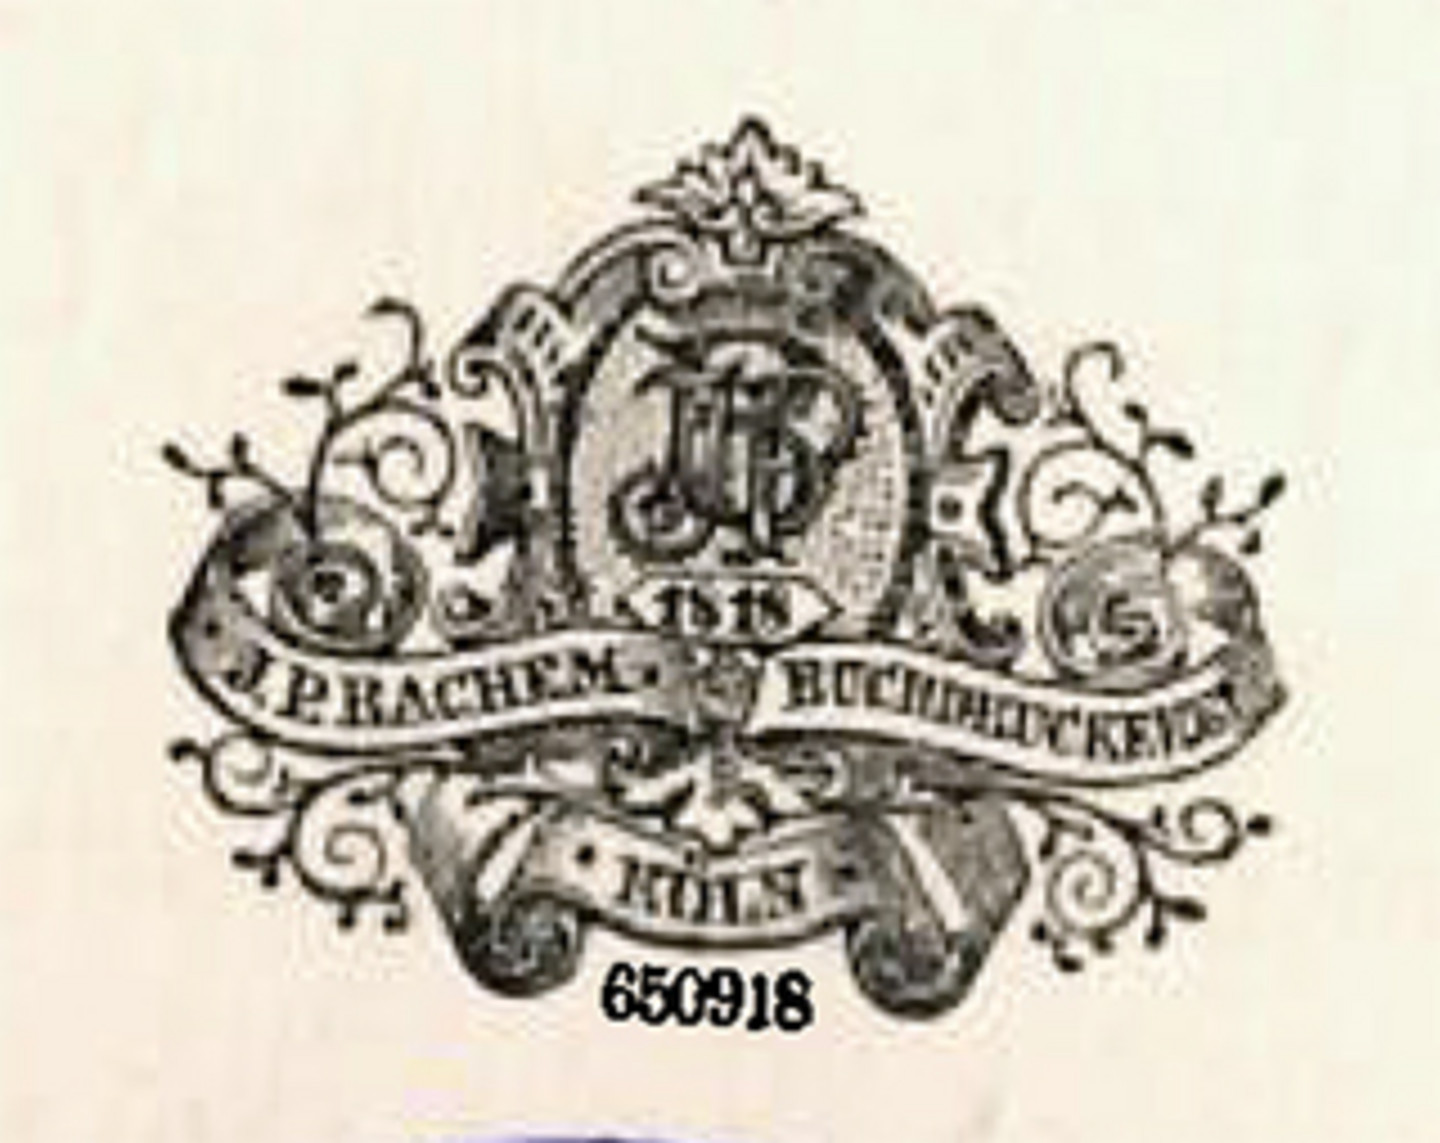 Ein historisches Wappen der Bachem`schen Buchdruckerei um 1900. Es ist verziert mit blumenartigen Linien und ist mit der Jahreszahl 1818 beschriftet. Darüber sind die Initialen "JP" abgebildet.